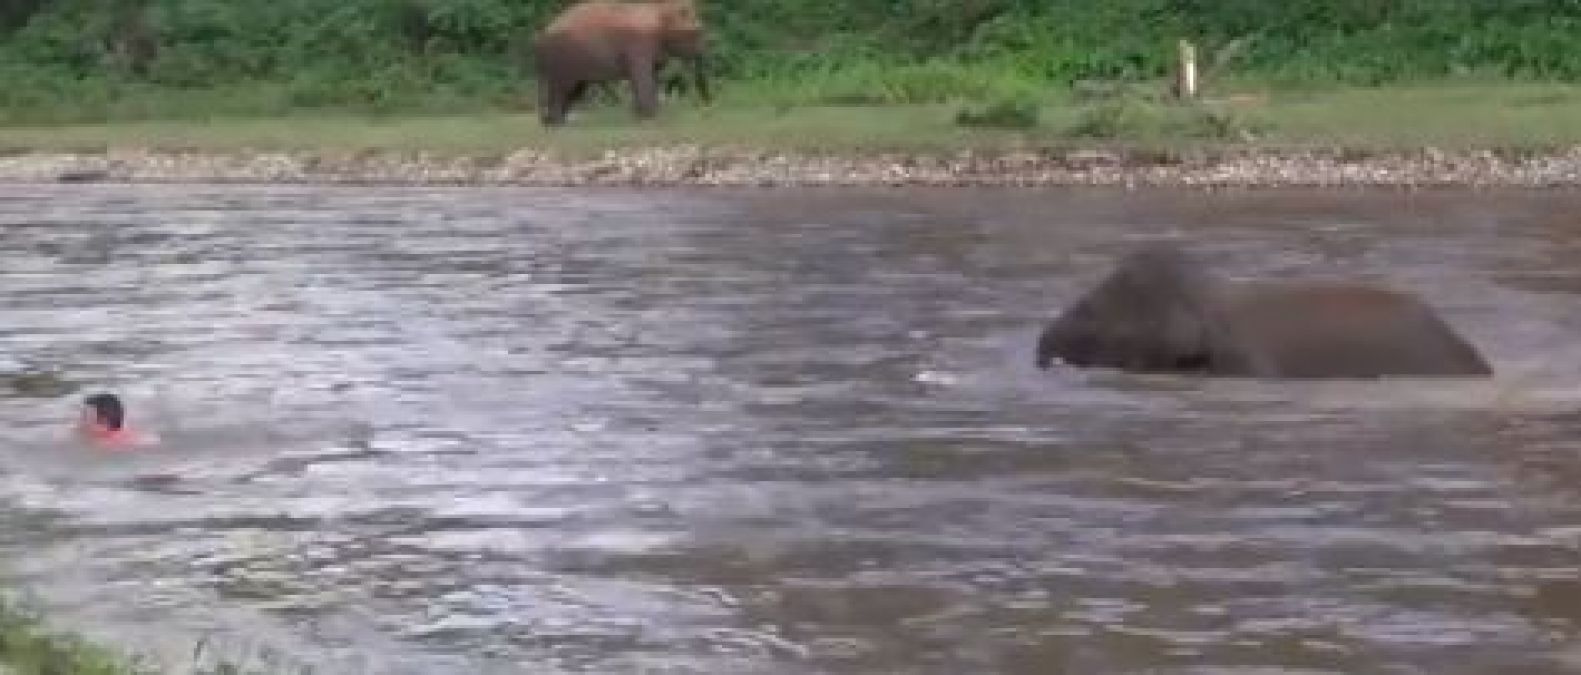 Video : नदी में तैर रहा था शख्स, डूबता देख पानी में उतरा हाथी का बच्चा